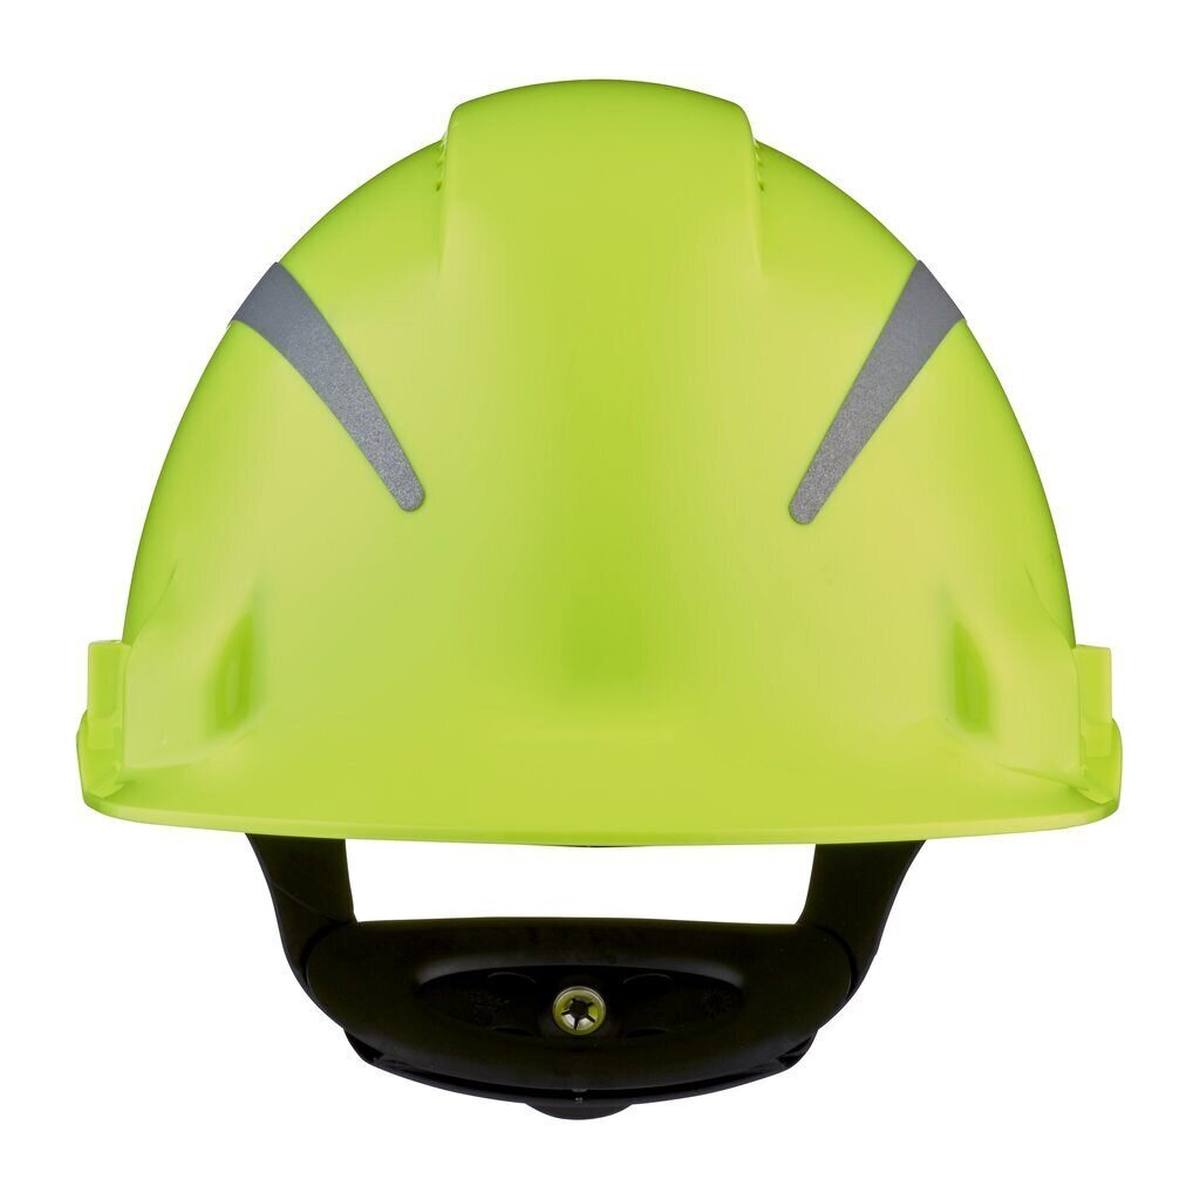 elmetto di sicurezza 3M G3000 con indicatore UV, verde neon, ABS, chiusura a cricchetto ventilata, fascia antisudore in plastica, adesivo riflettente